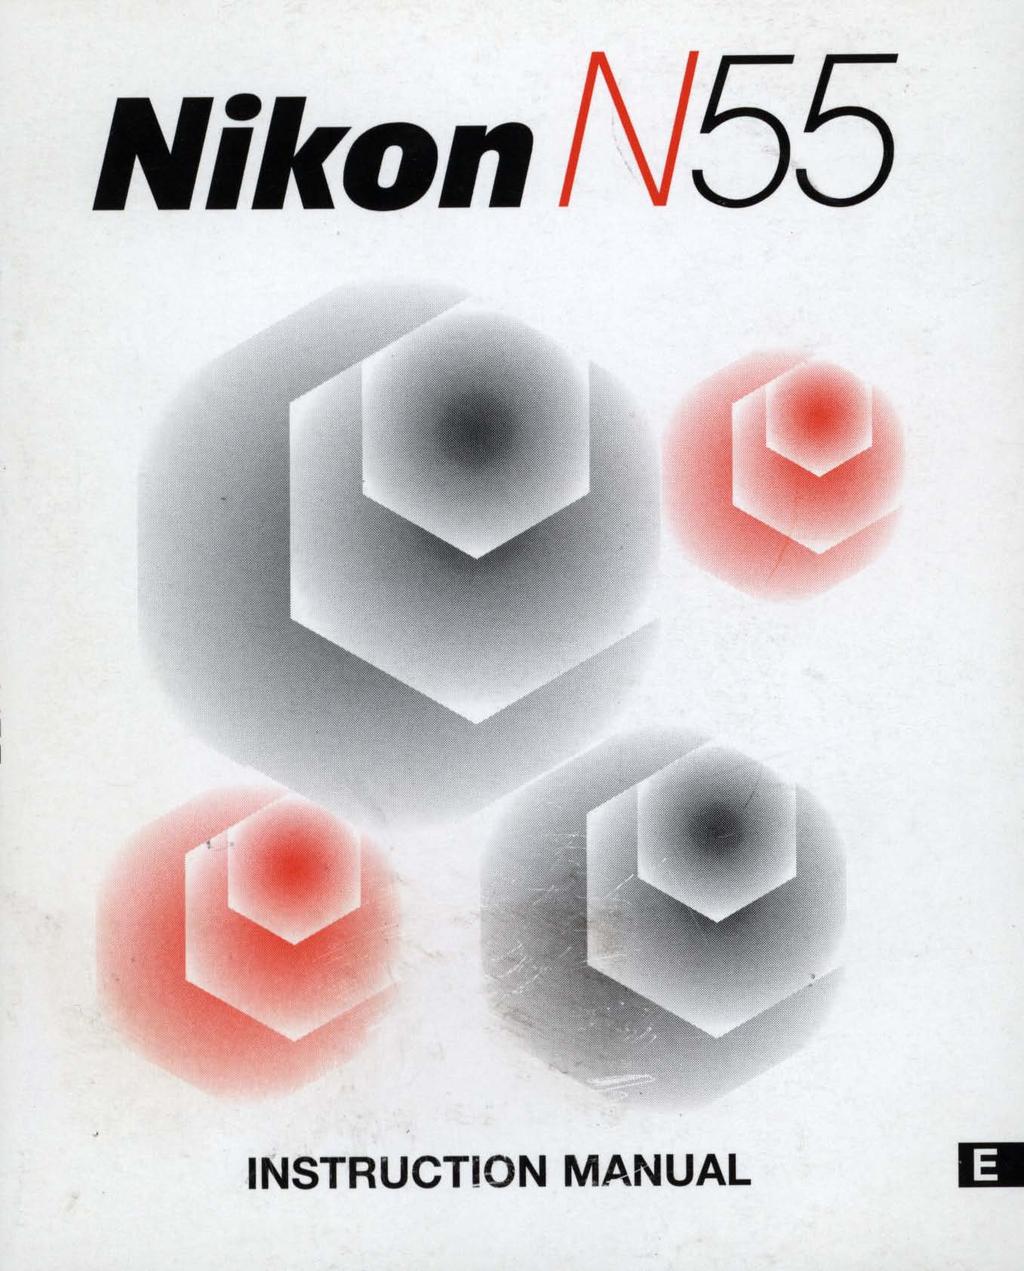 NikonN55